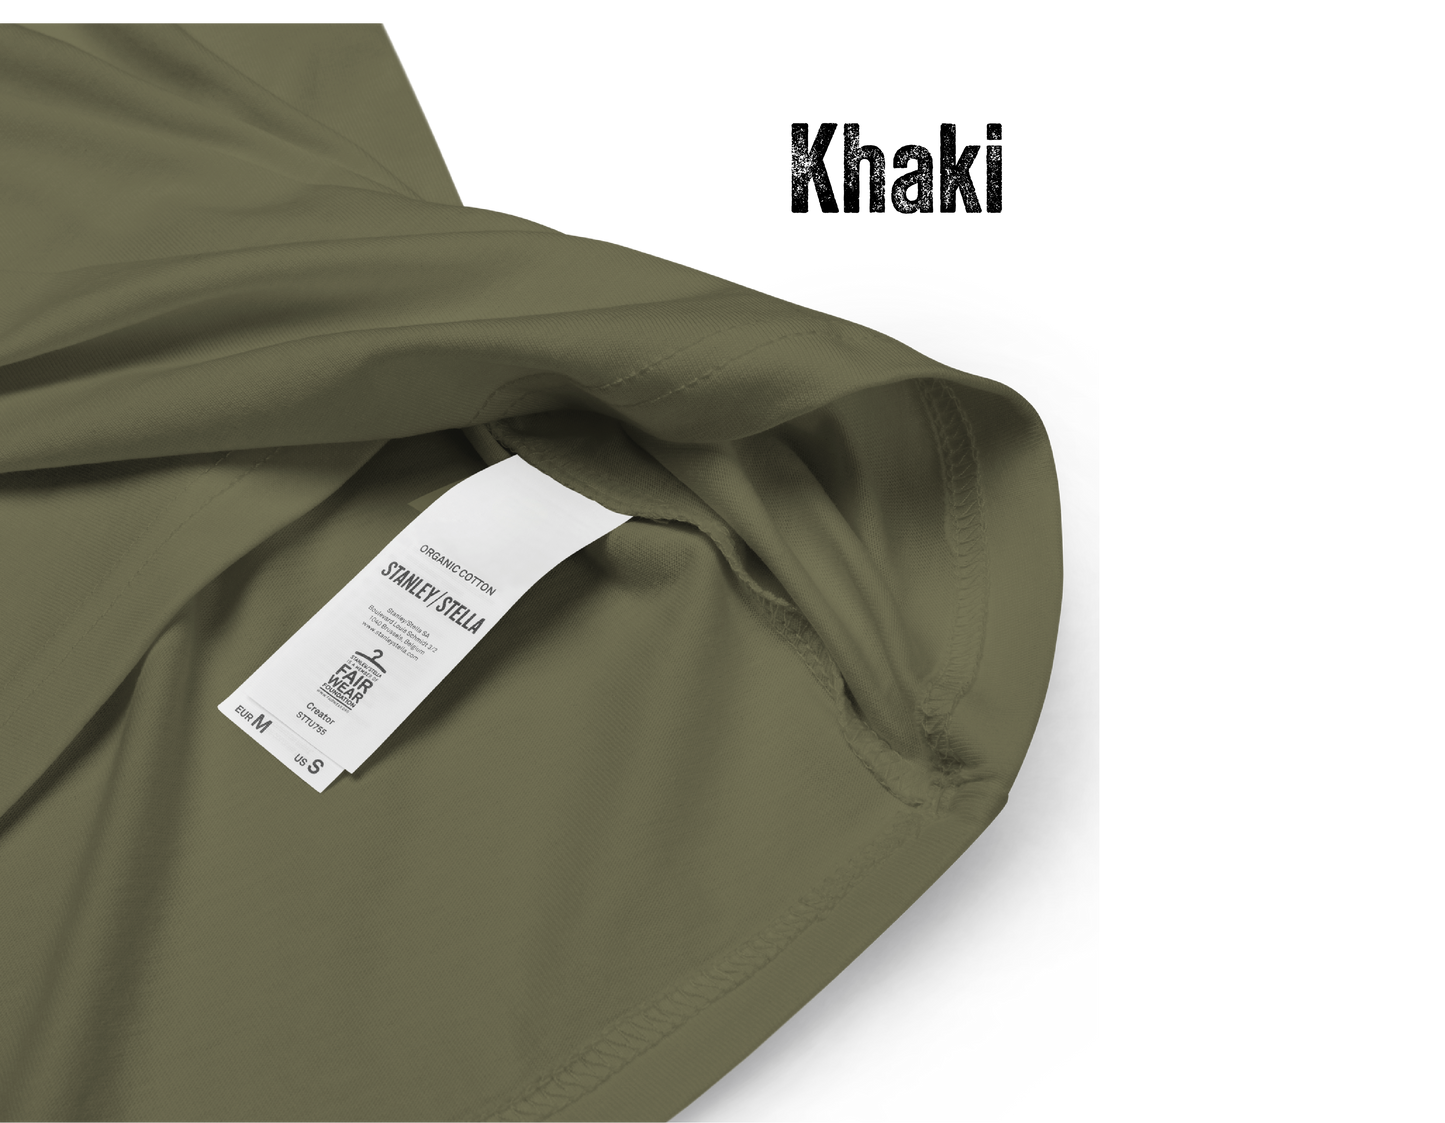 Fuchs Polygon Unisex-Bio-Baumwoll-T-Shirt